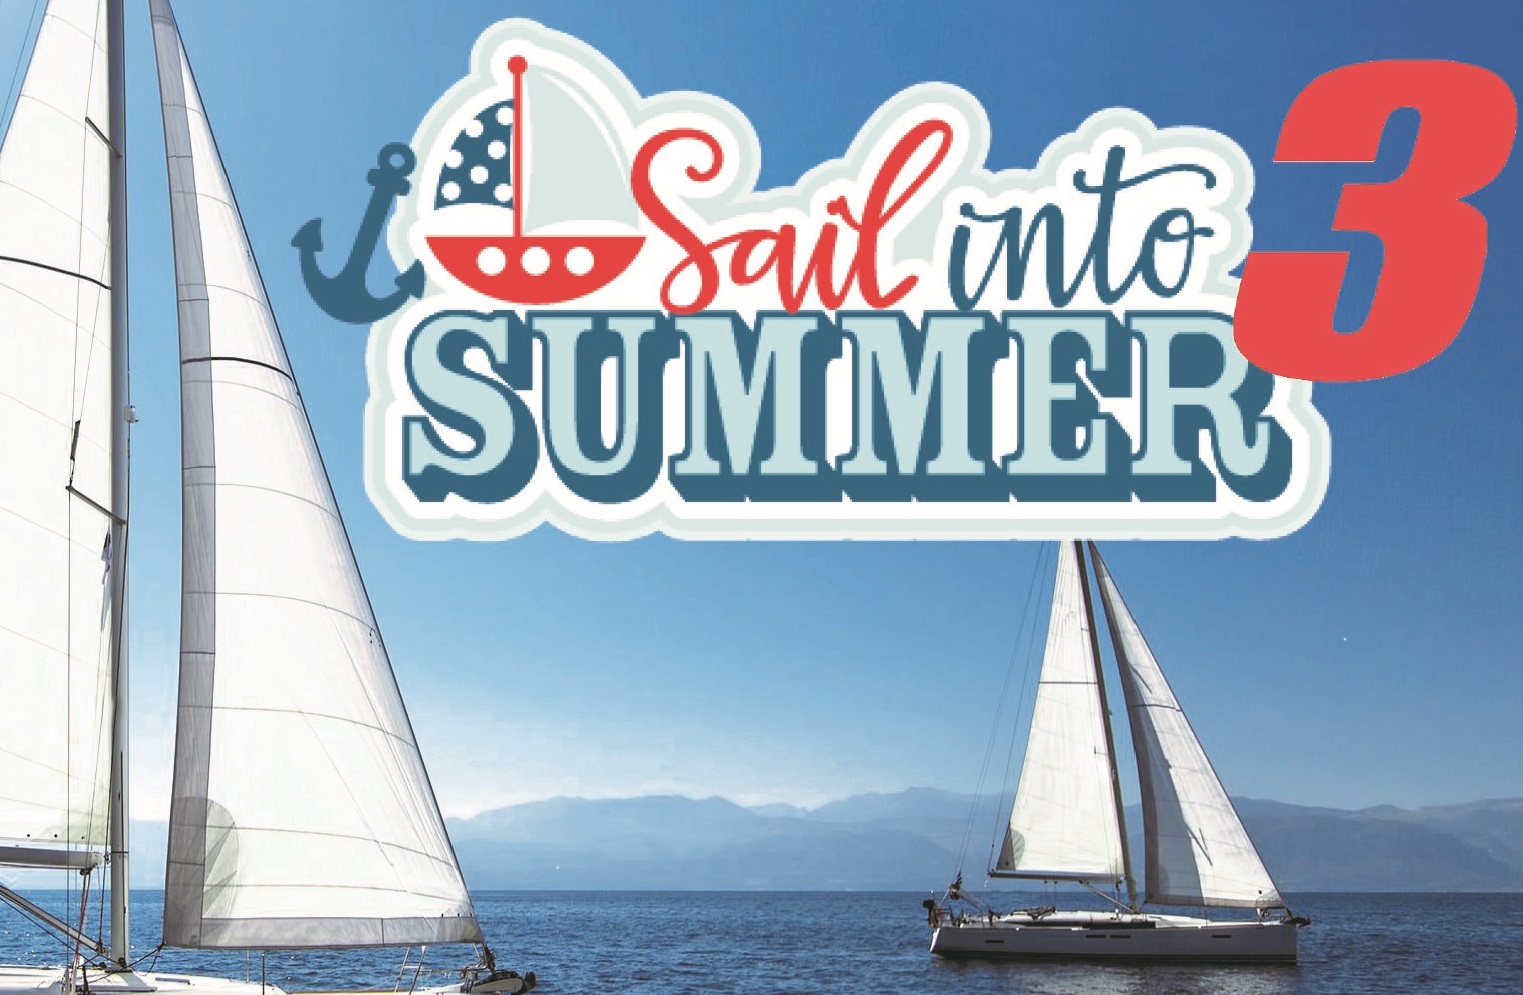 Sail into Summer 3